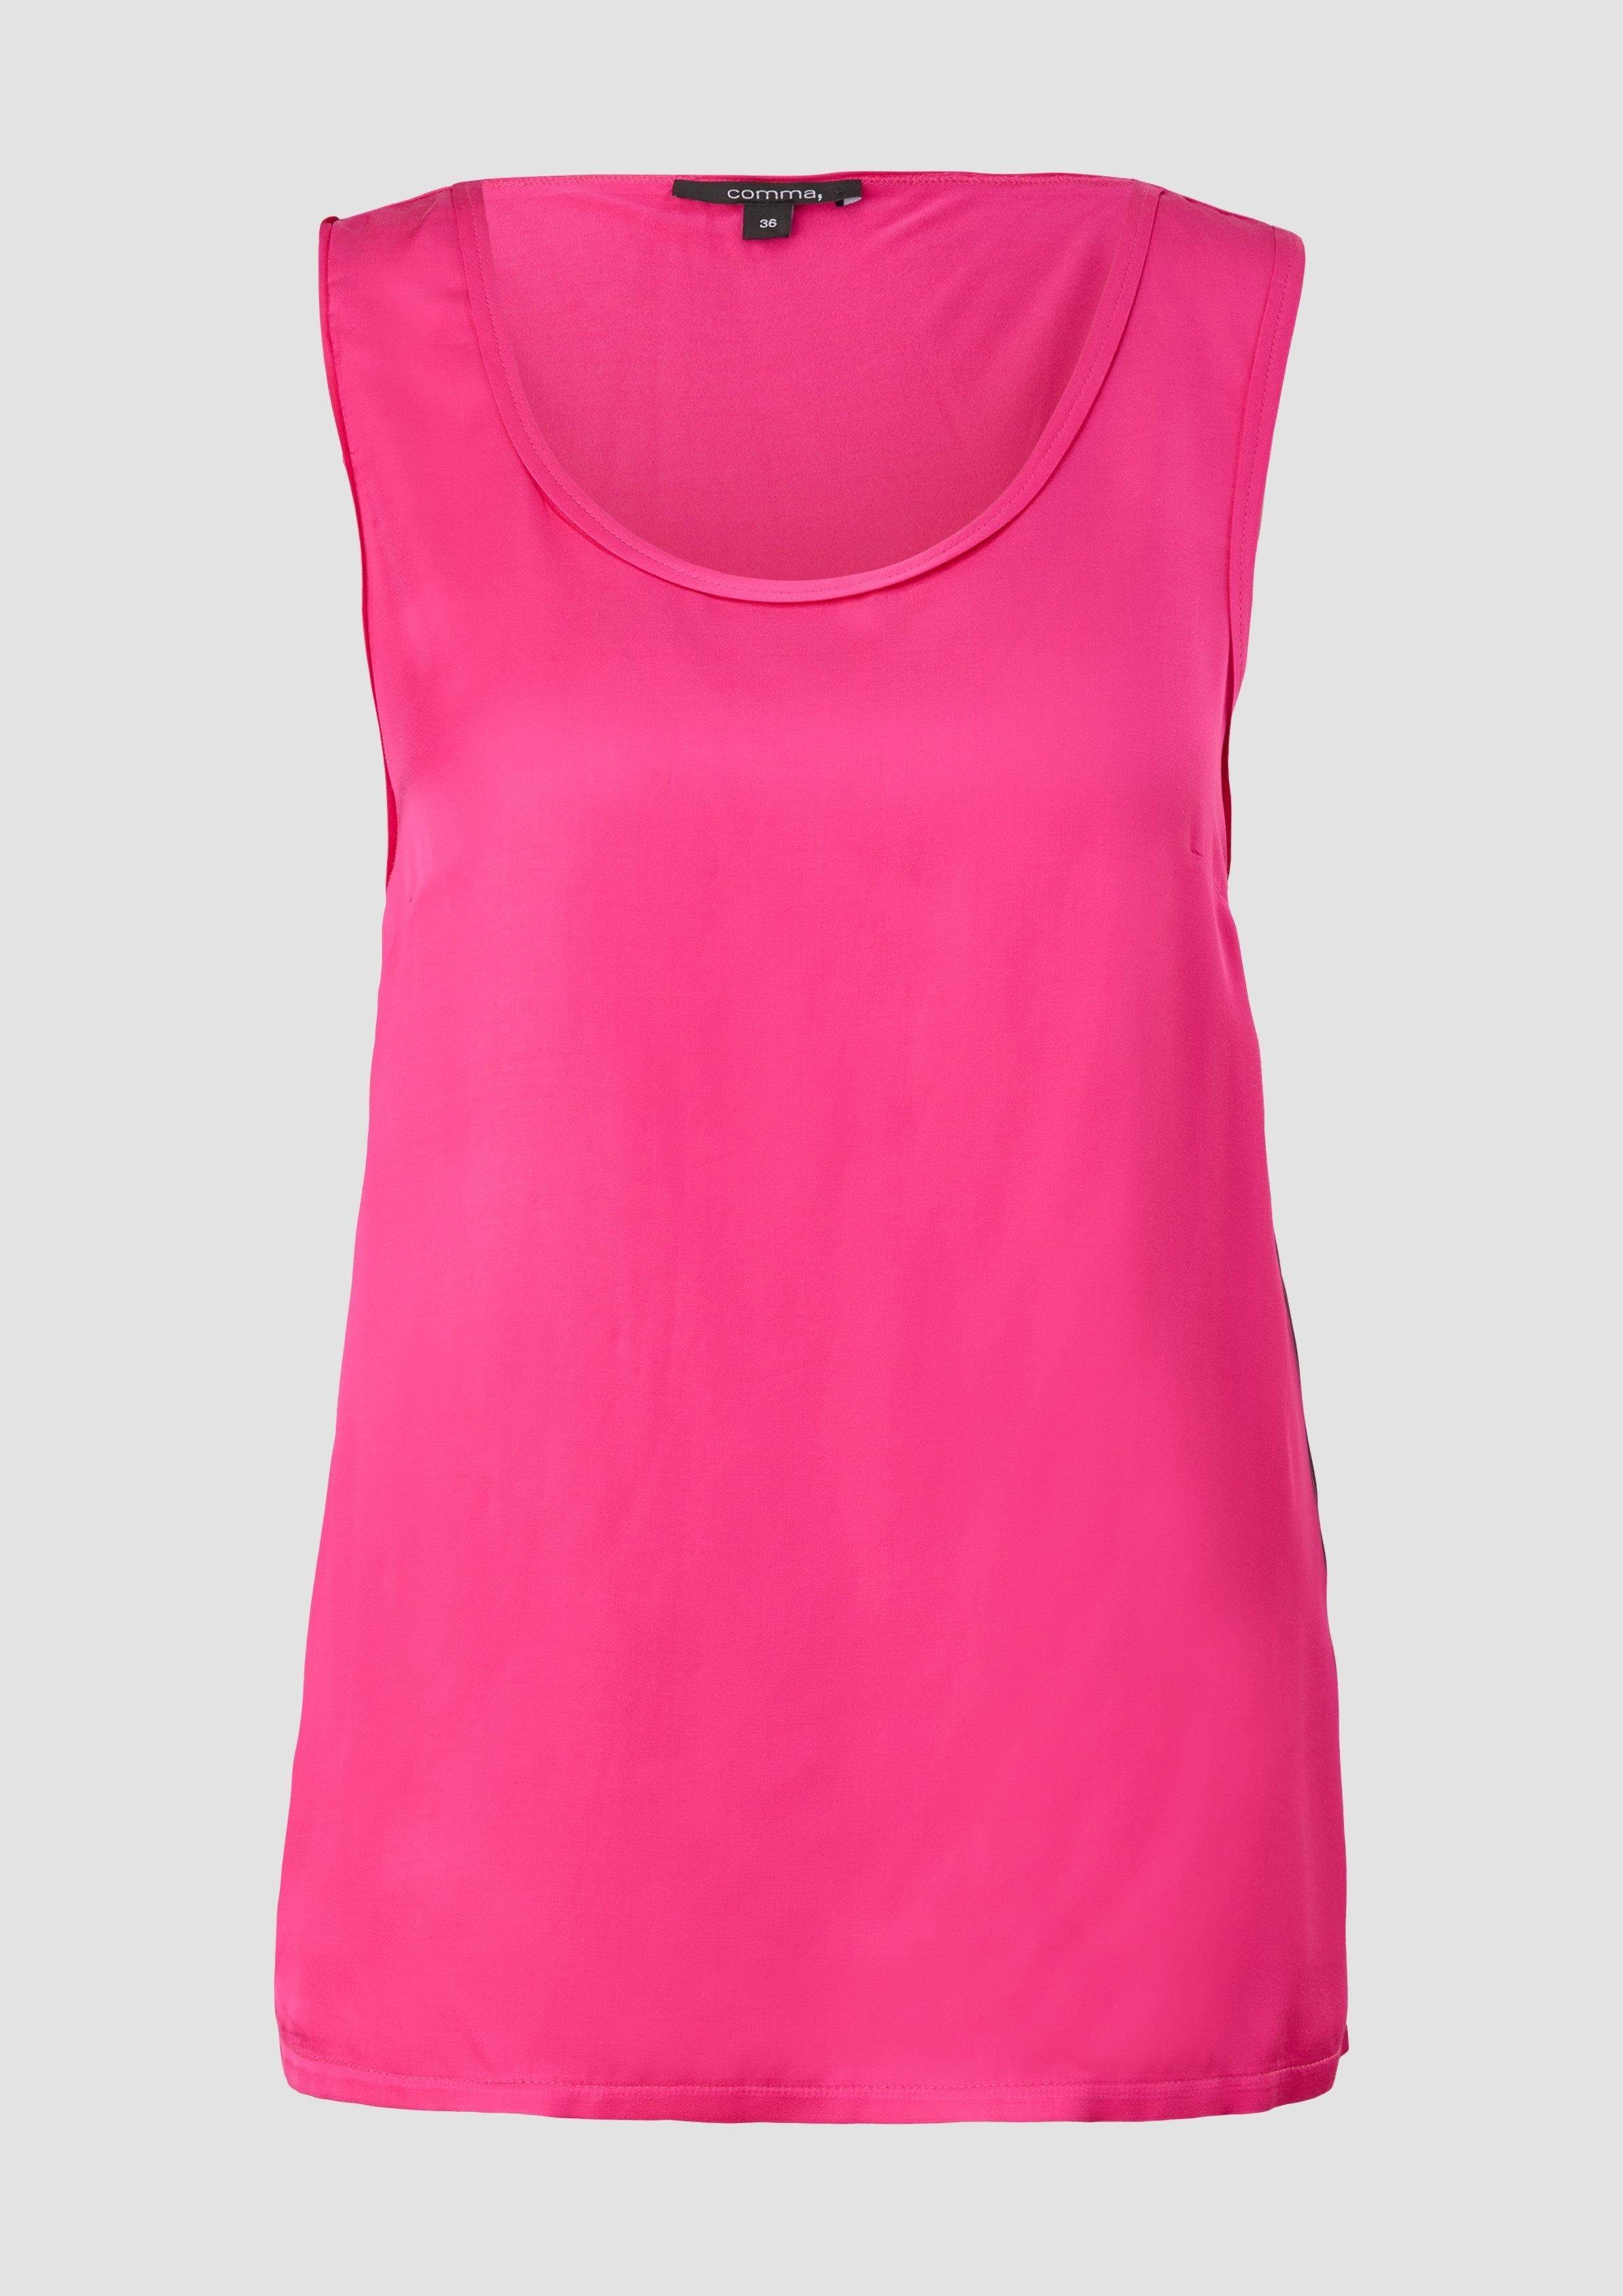 Comma im Fabricmix Shirt pink Shirttop